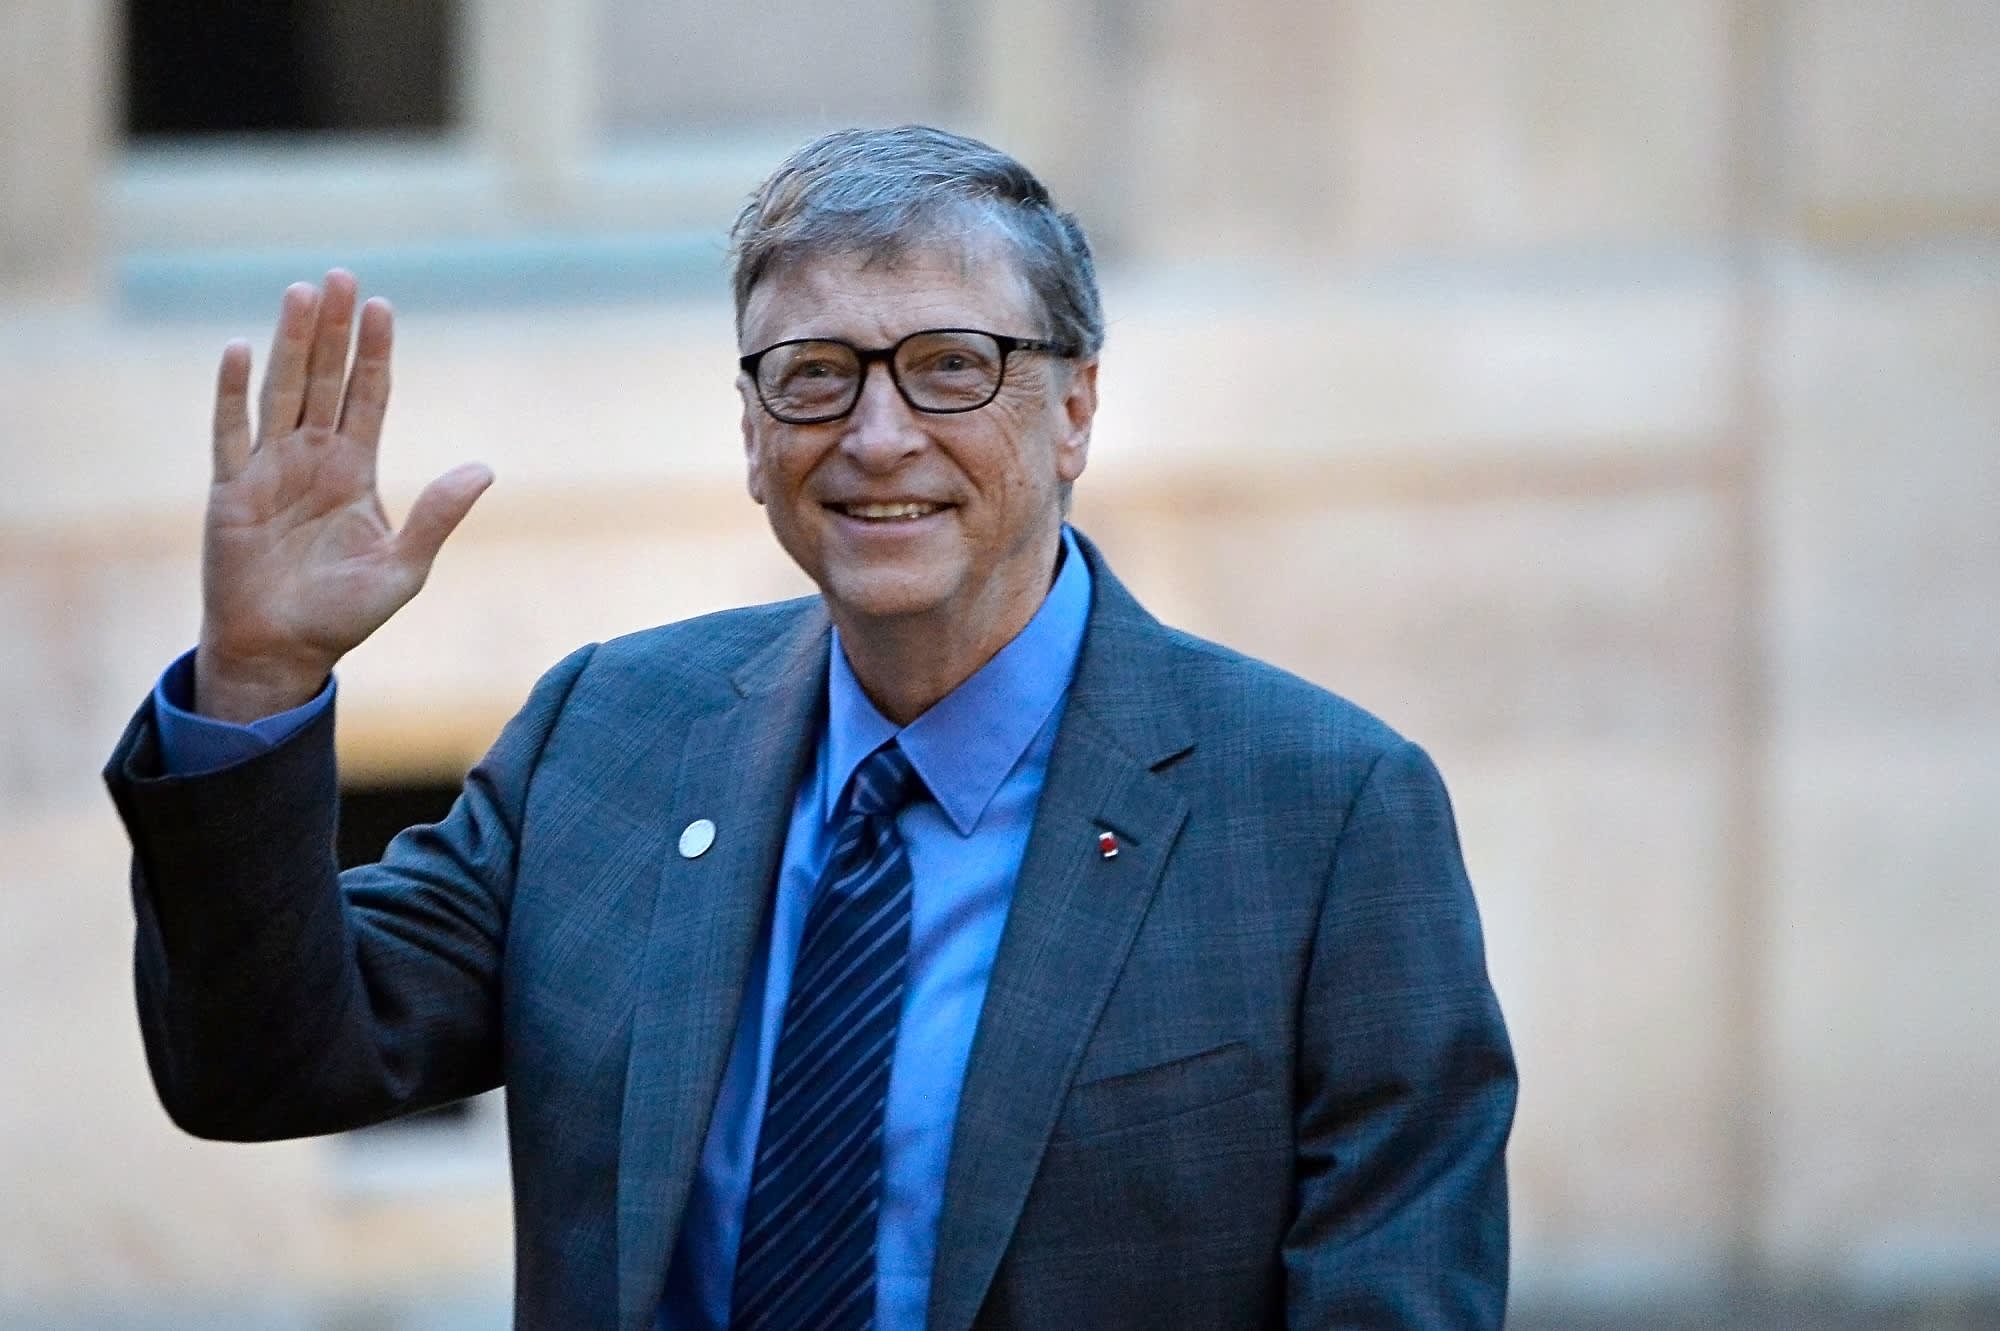 Bill Gates sở hữu bài tay chữ M